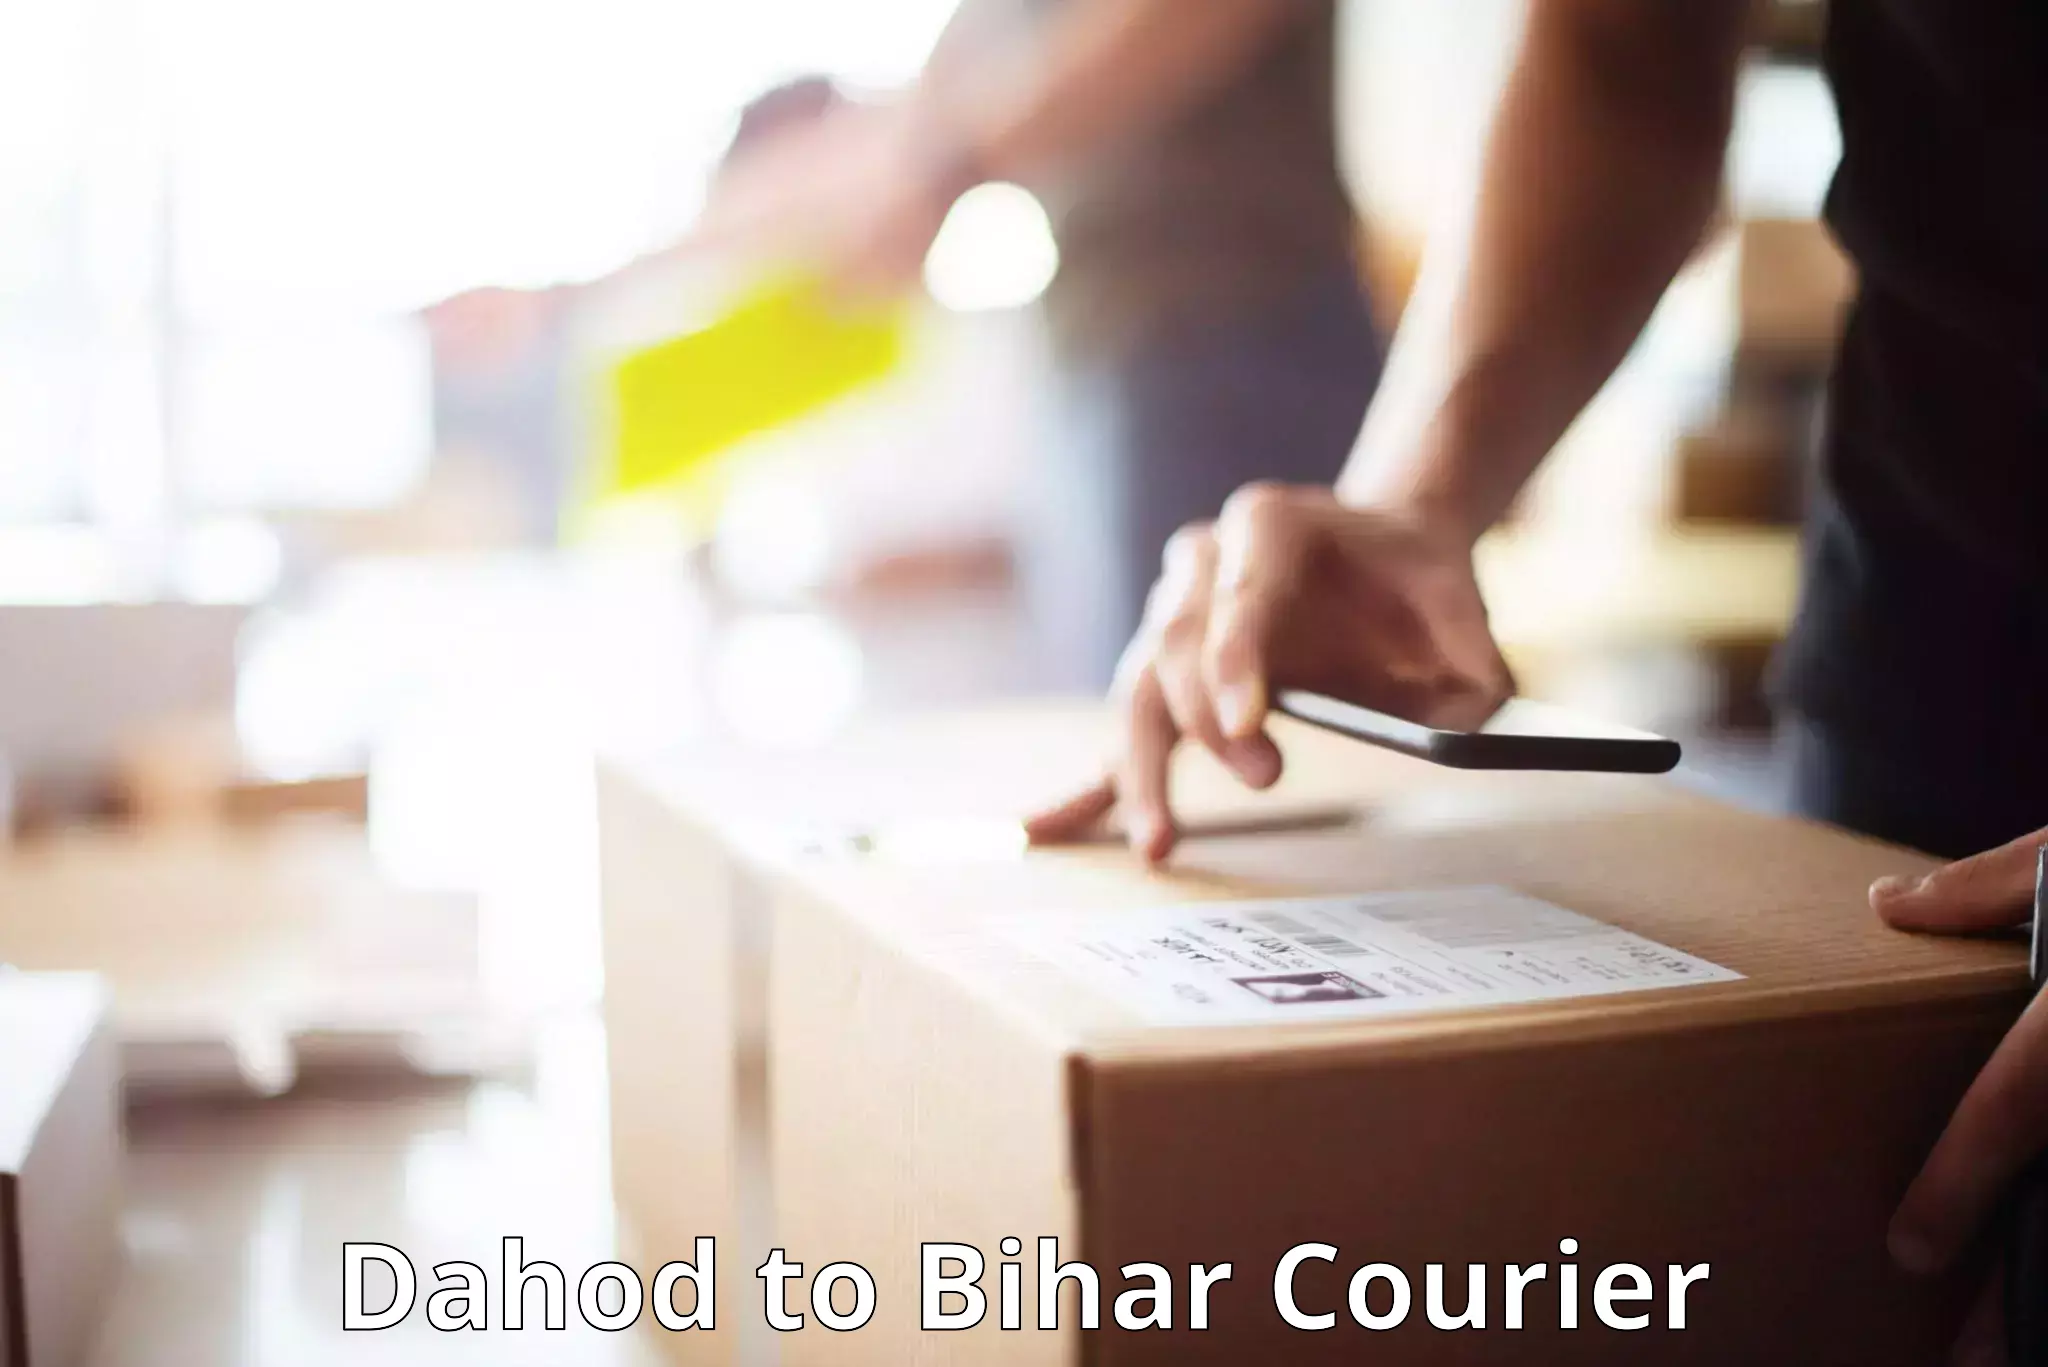 Baggage delivery estimate Dahod to Bihar